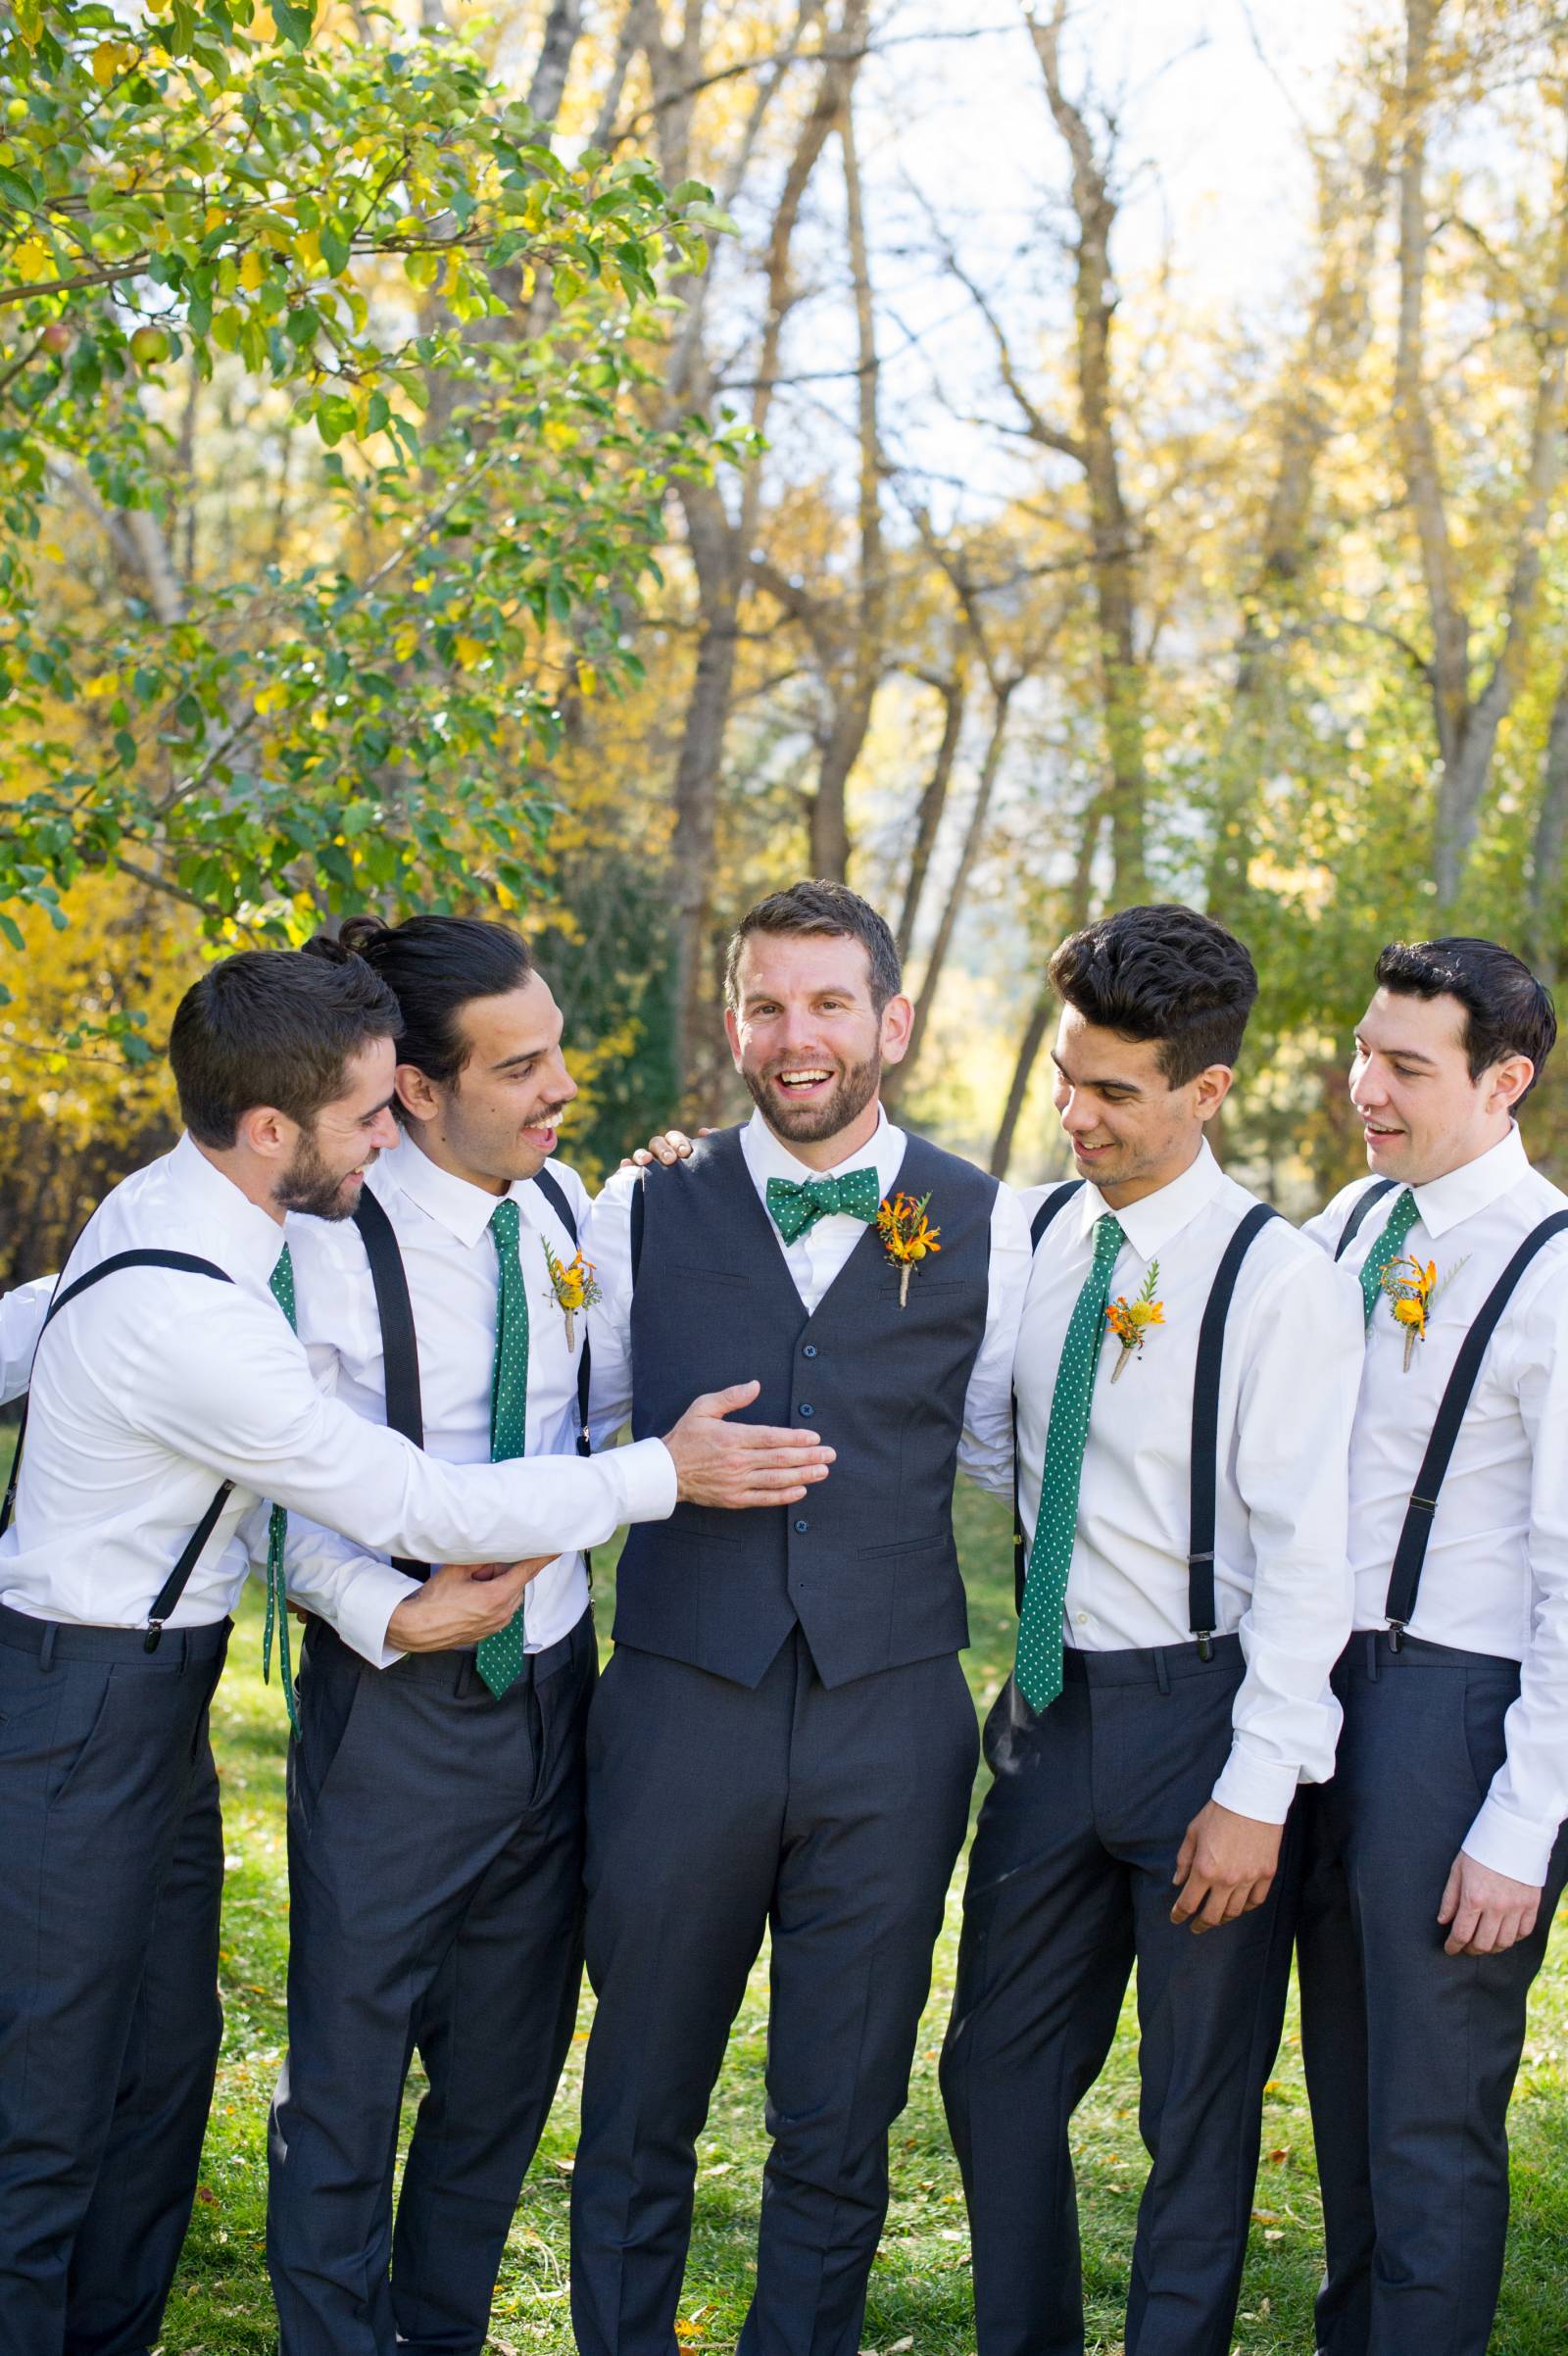 Groomsmen with green ties